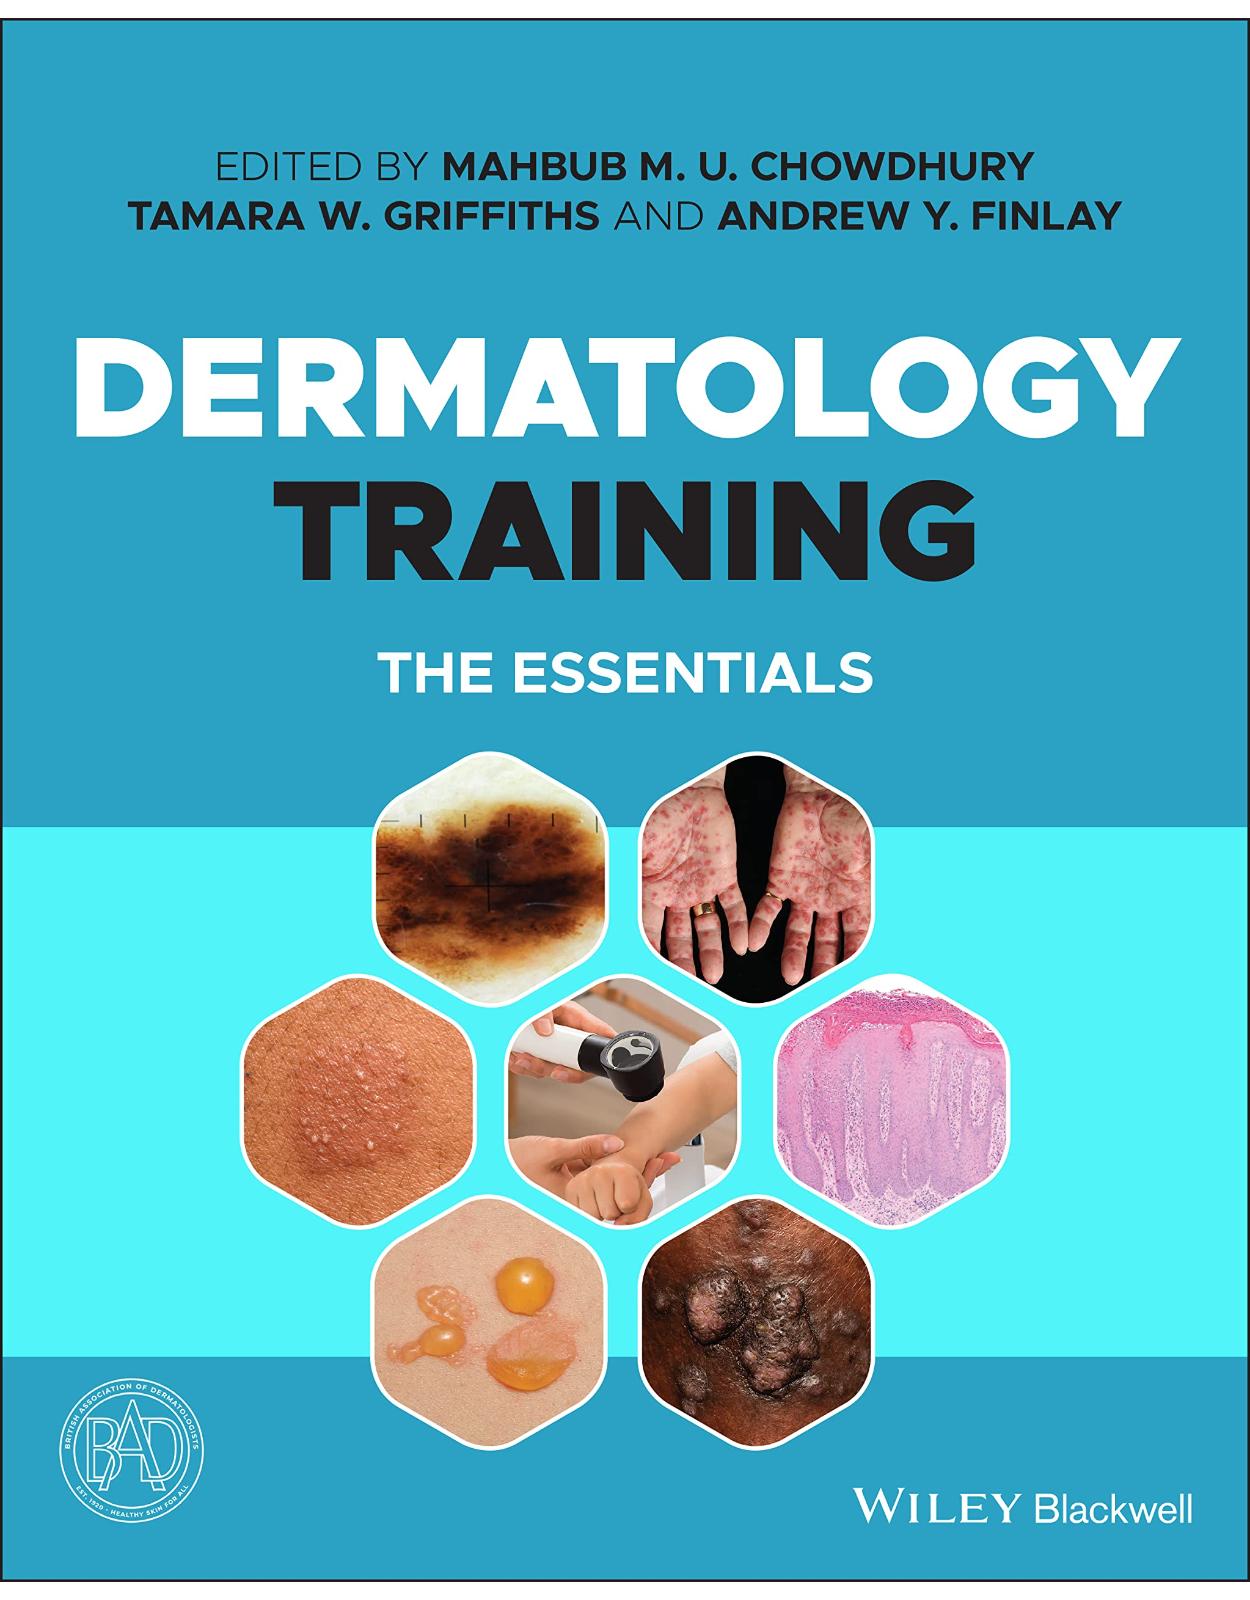 Dermatology Training: The Essentials